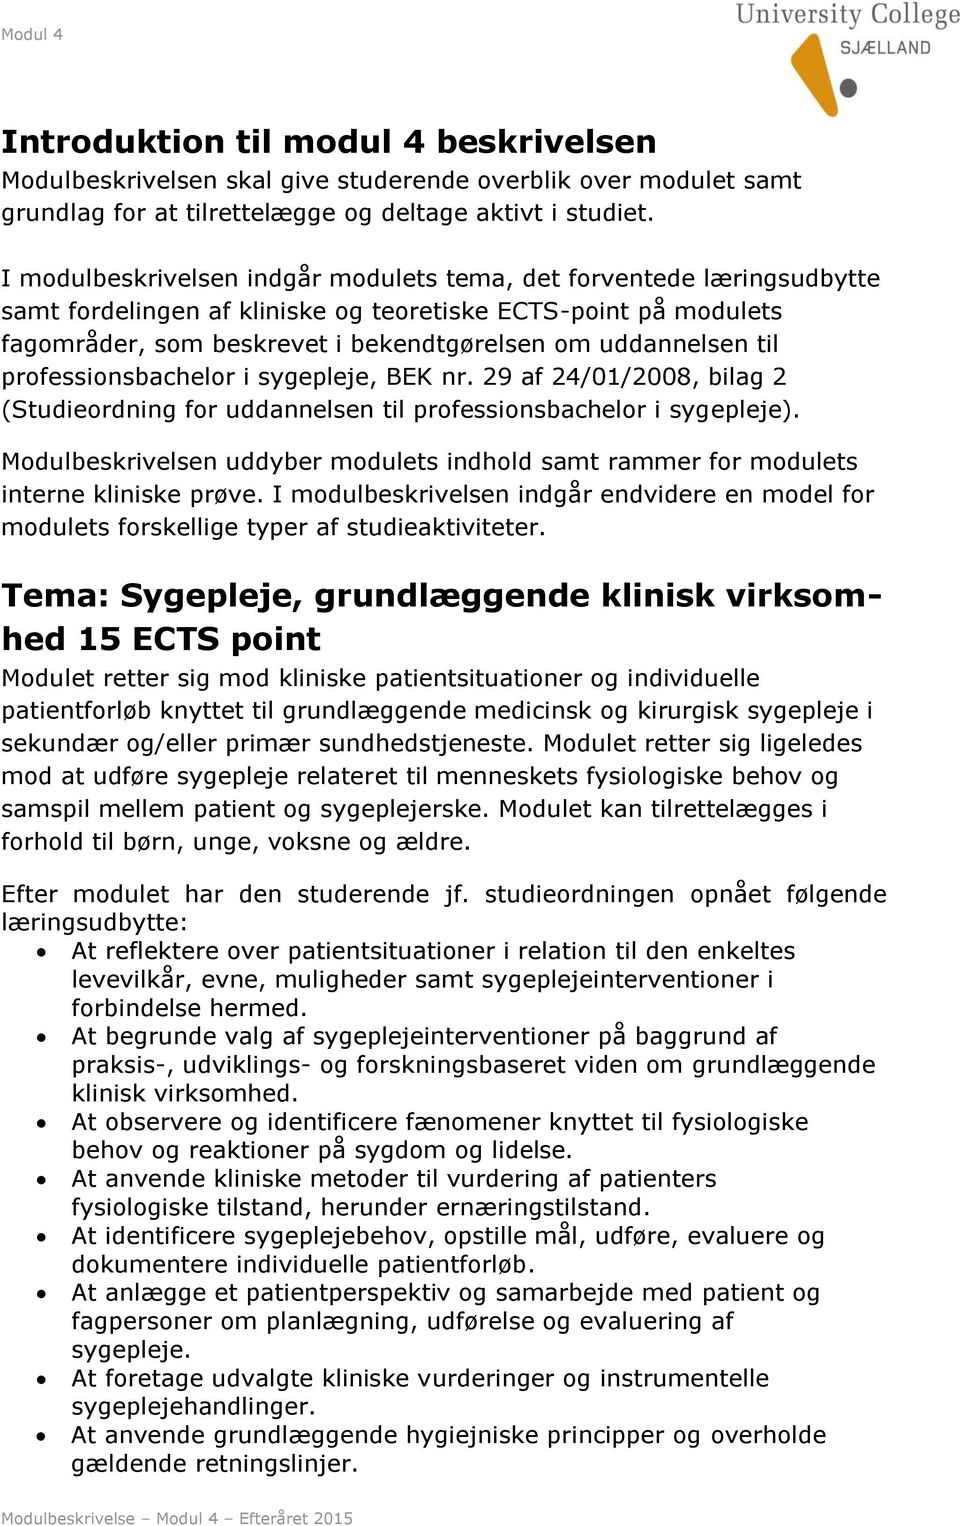 til professionsbachelor i sygepleje, BEK nr. 29 af 24/01/2008, bilag 2 (Studieordning for uddannelsen til professionsbachelor i sygepleje).